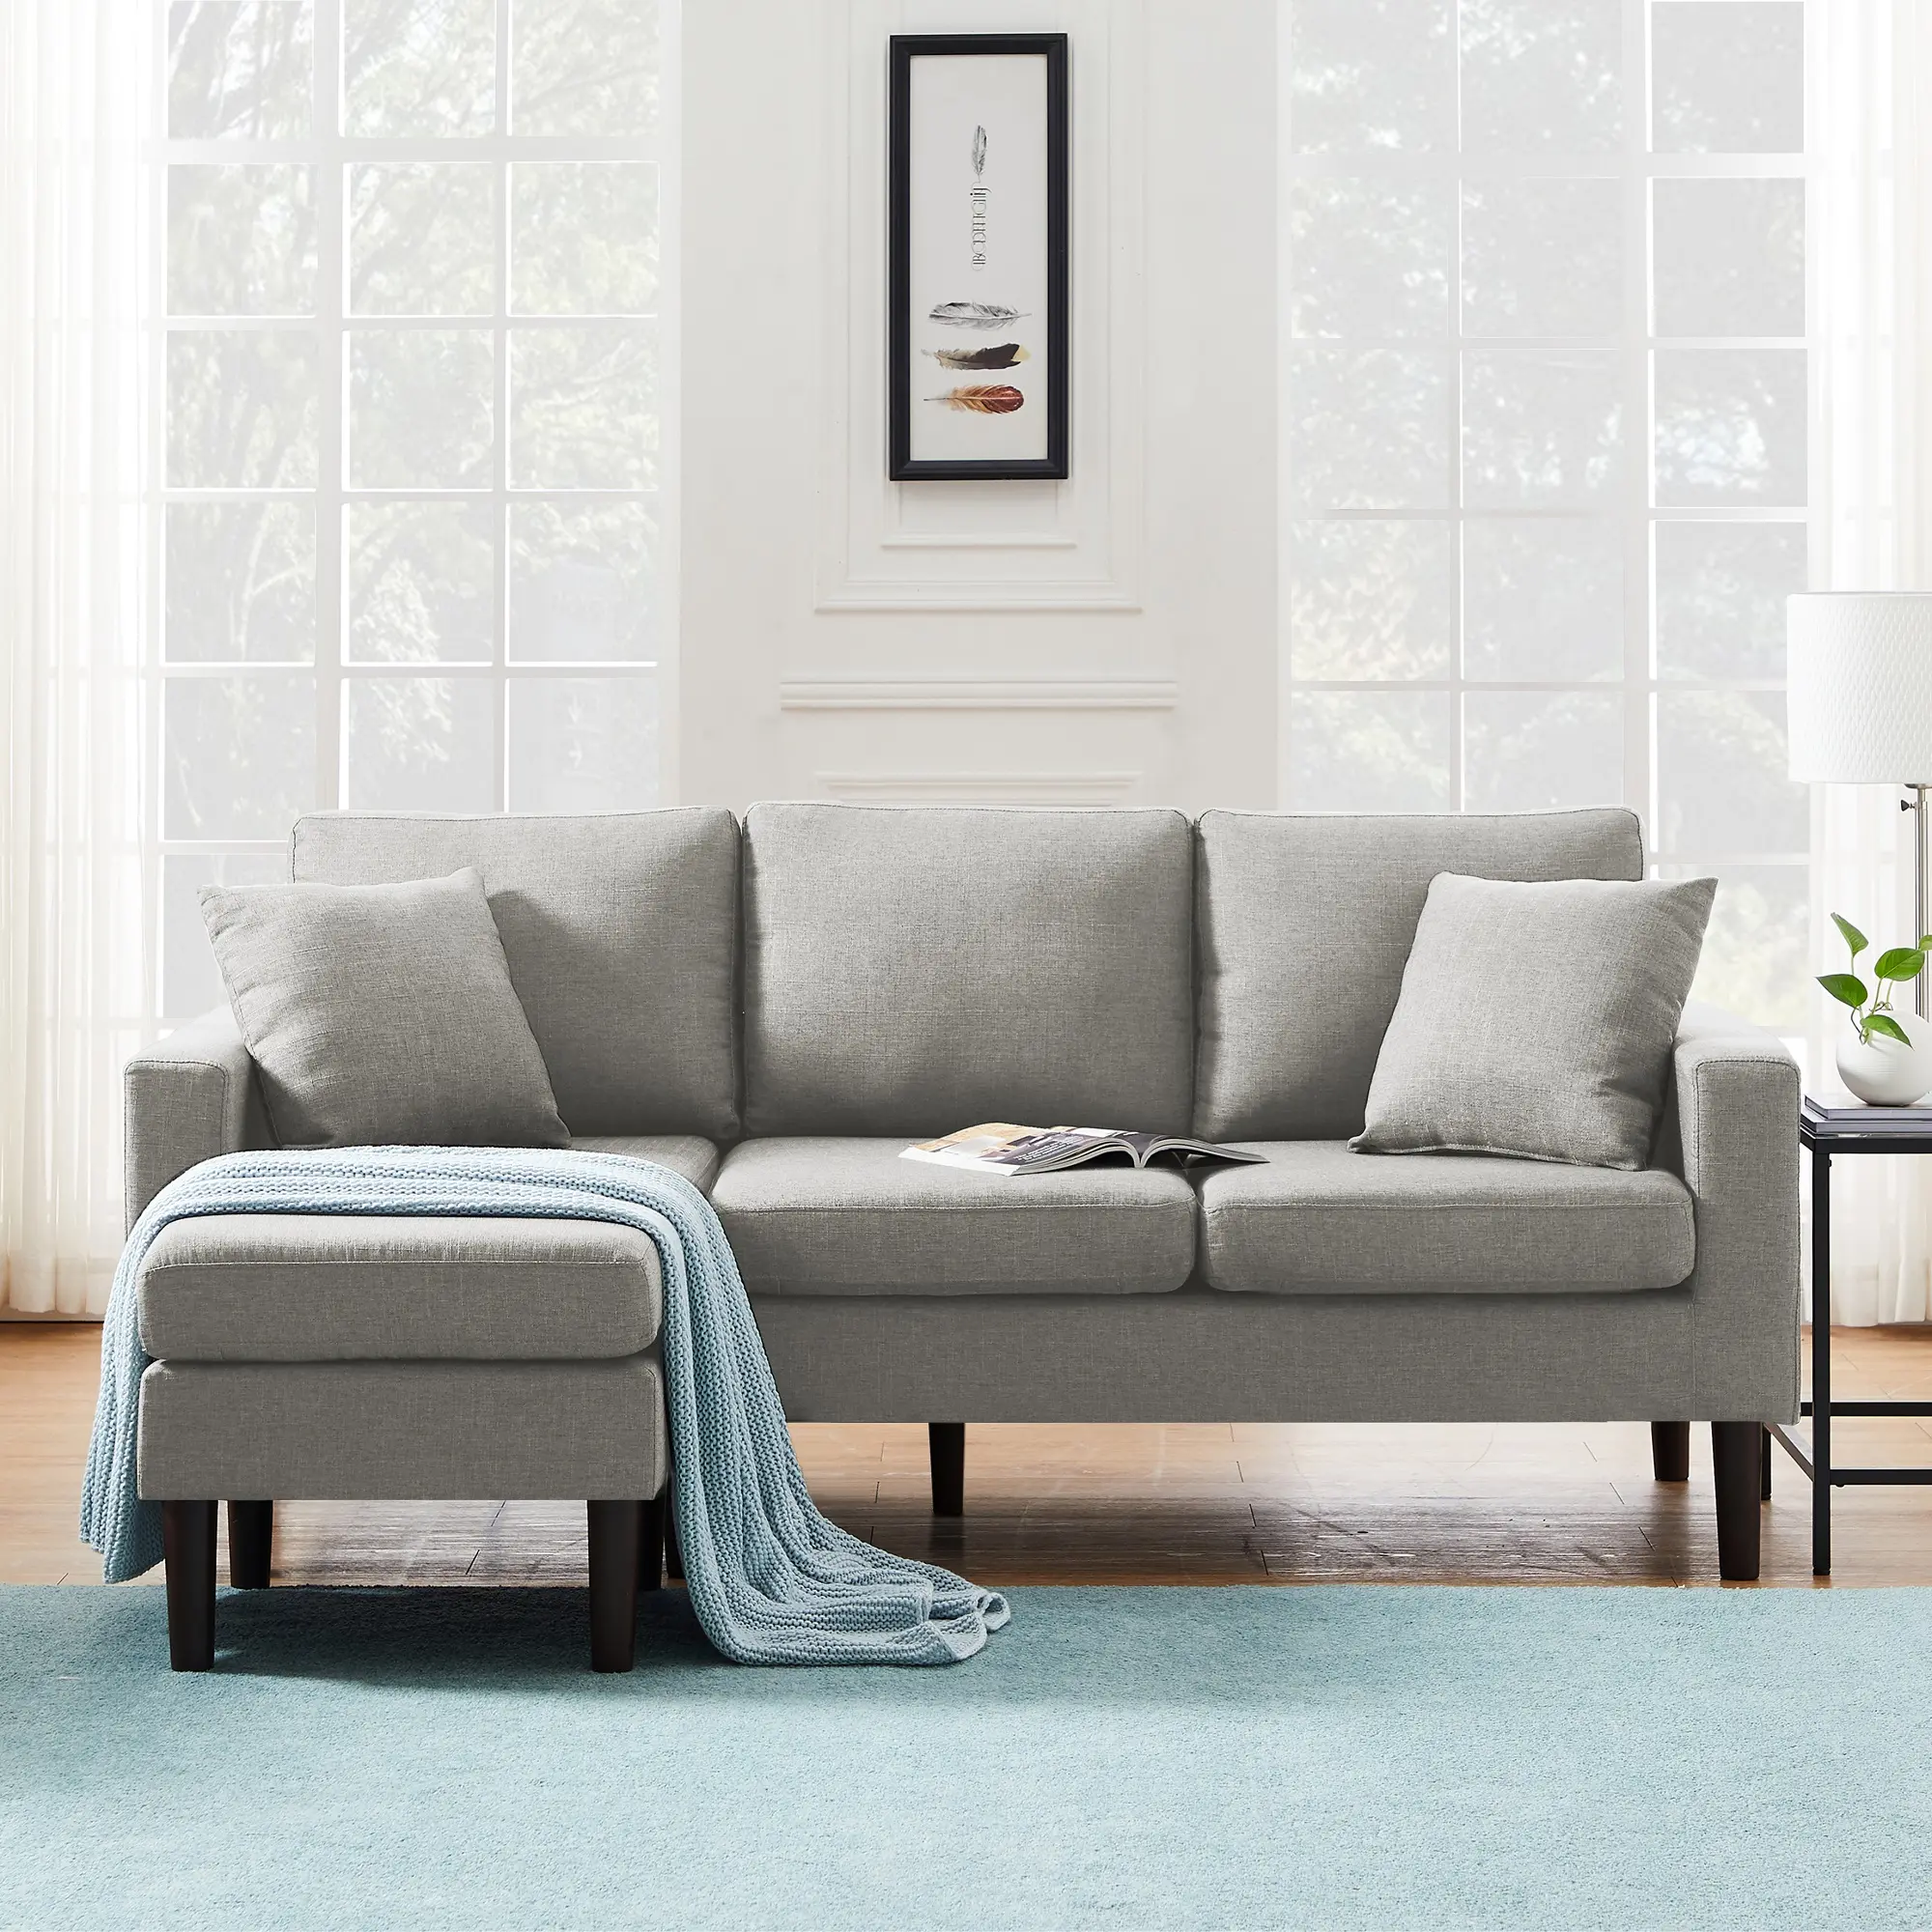 Диван для квартиры, гостиной, удобные диваны, Легкие серые льняные диваны, секционный угловой диван L-образной формы